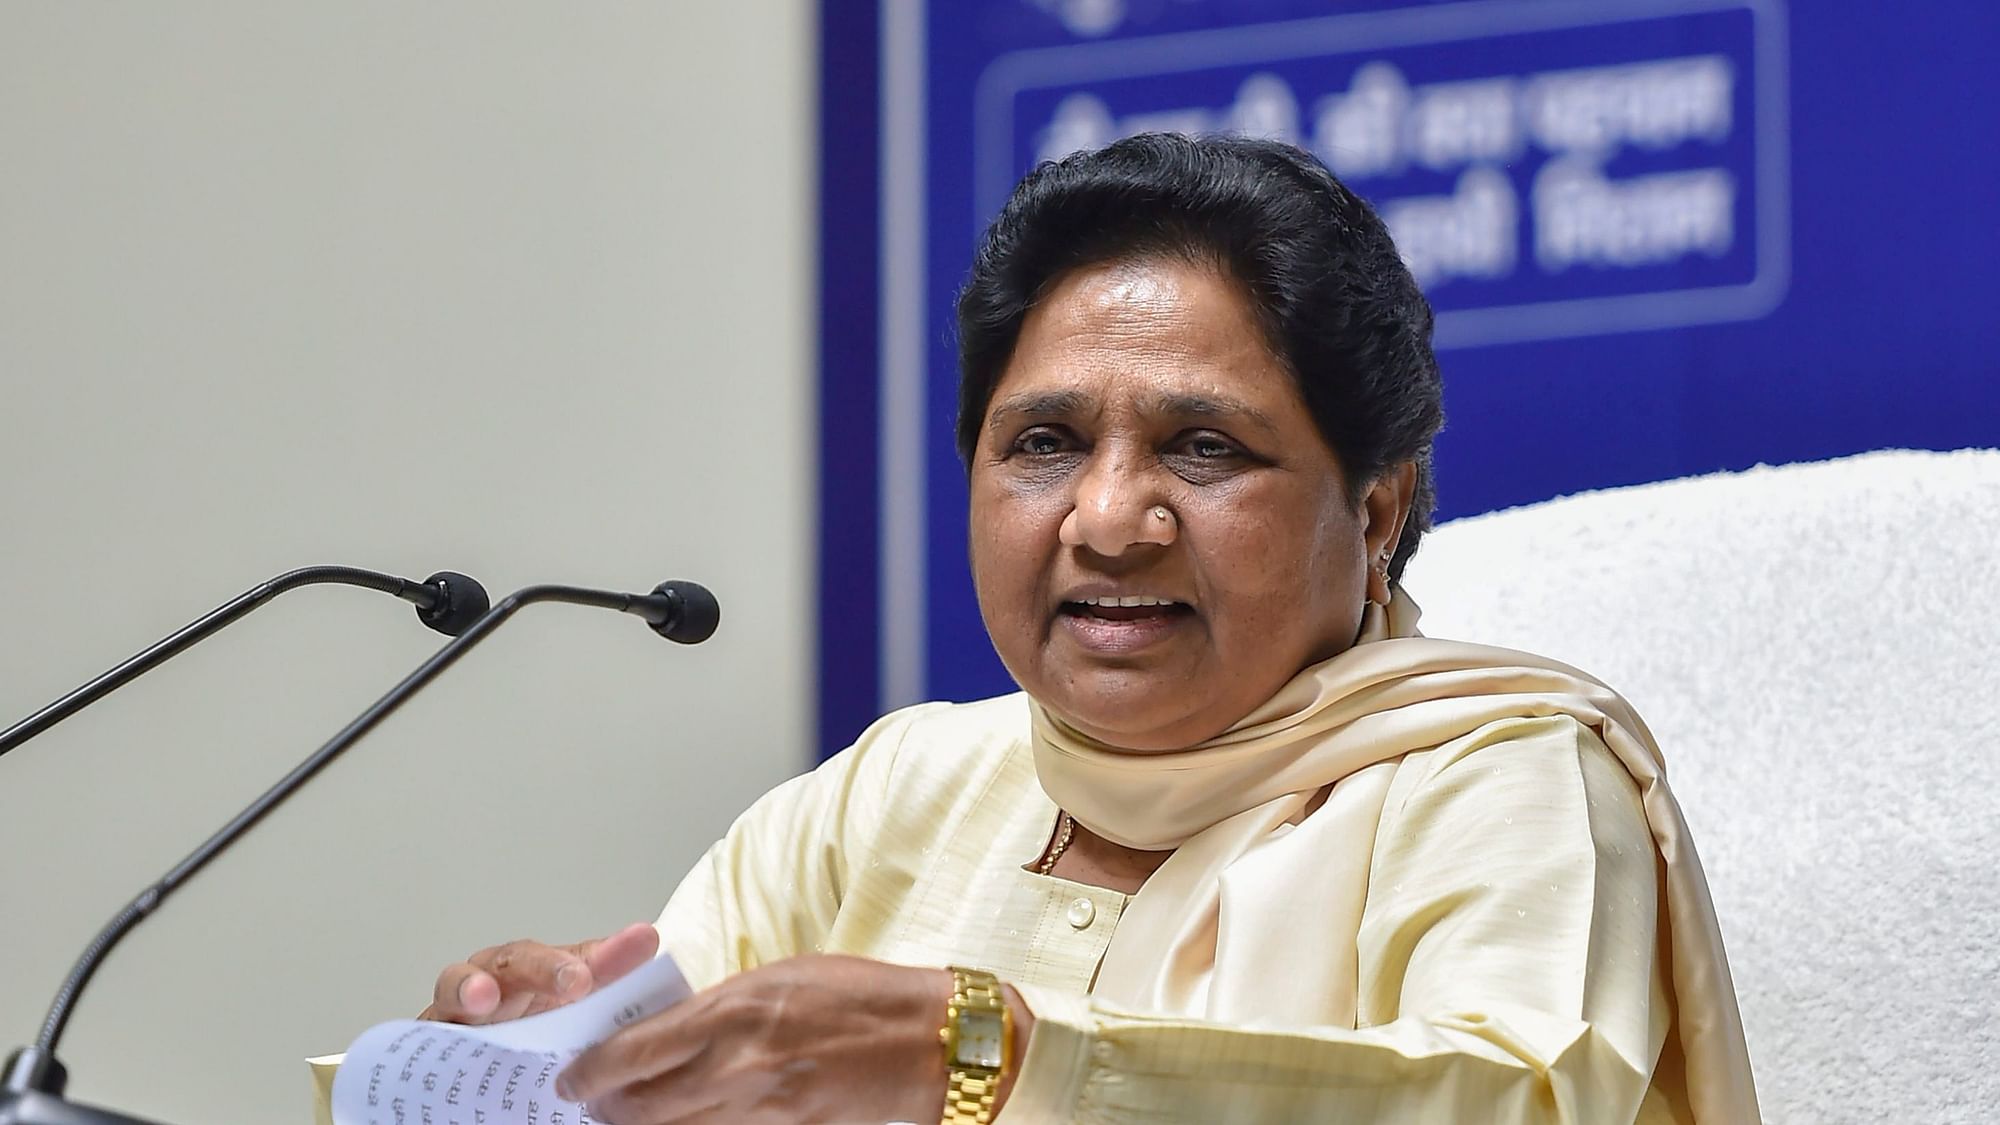 BSP Chief Mayawati.